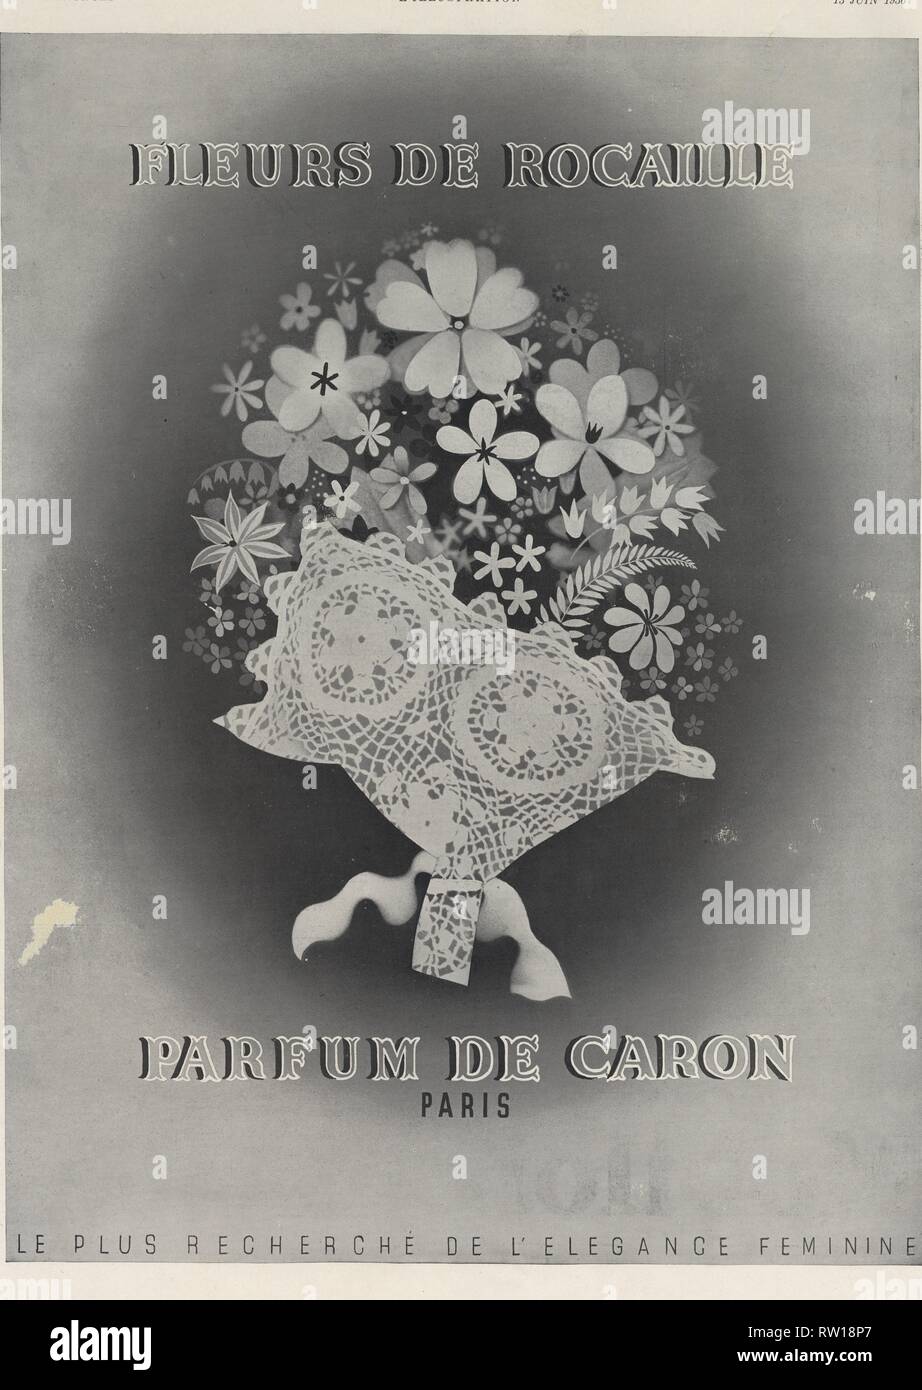 Publicité ancienne.13 juin 1936. Fleurs de rocaille. Parfum de Caron Paris. Stock Photo